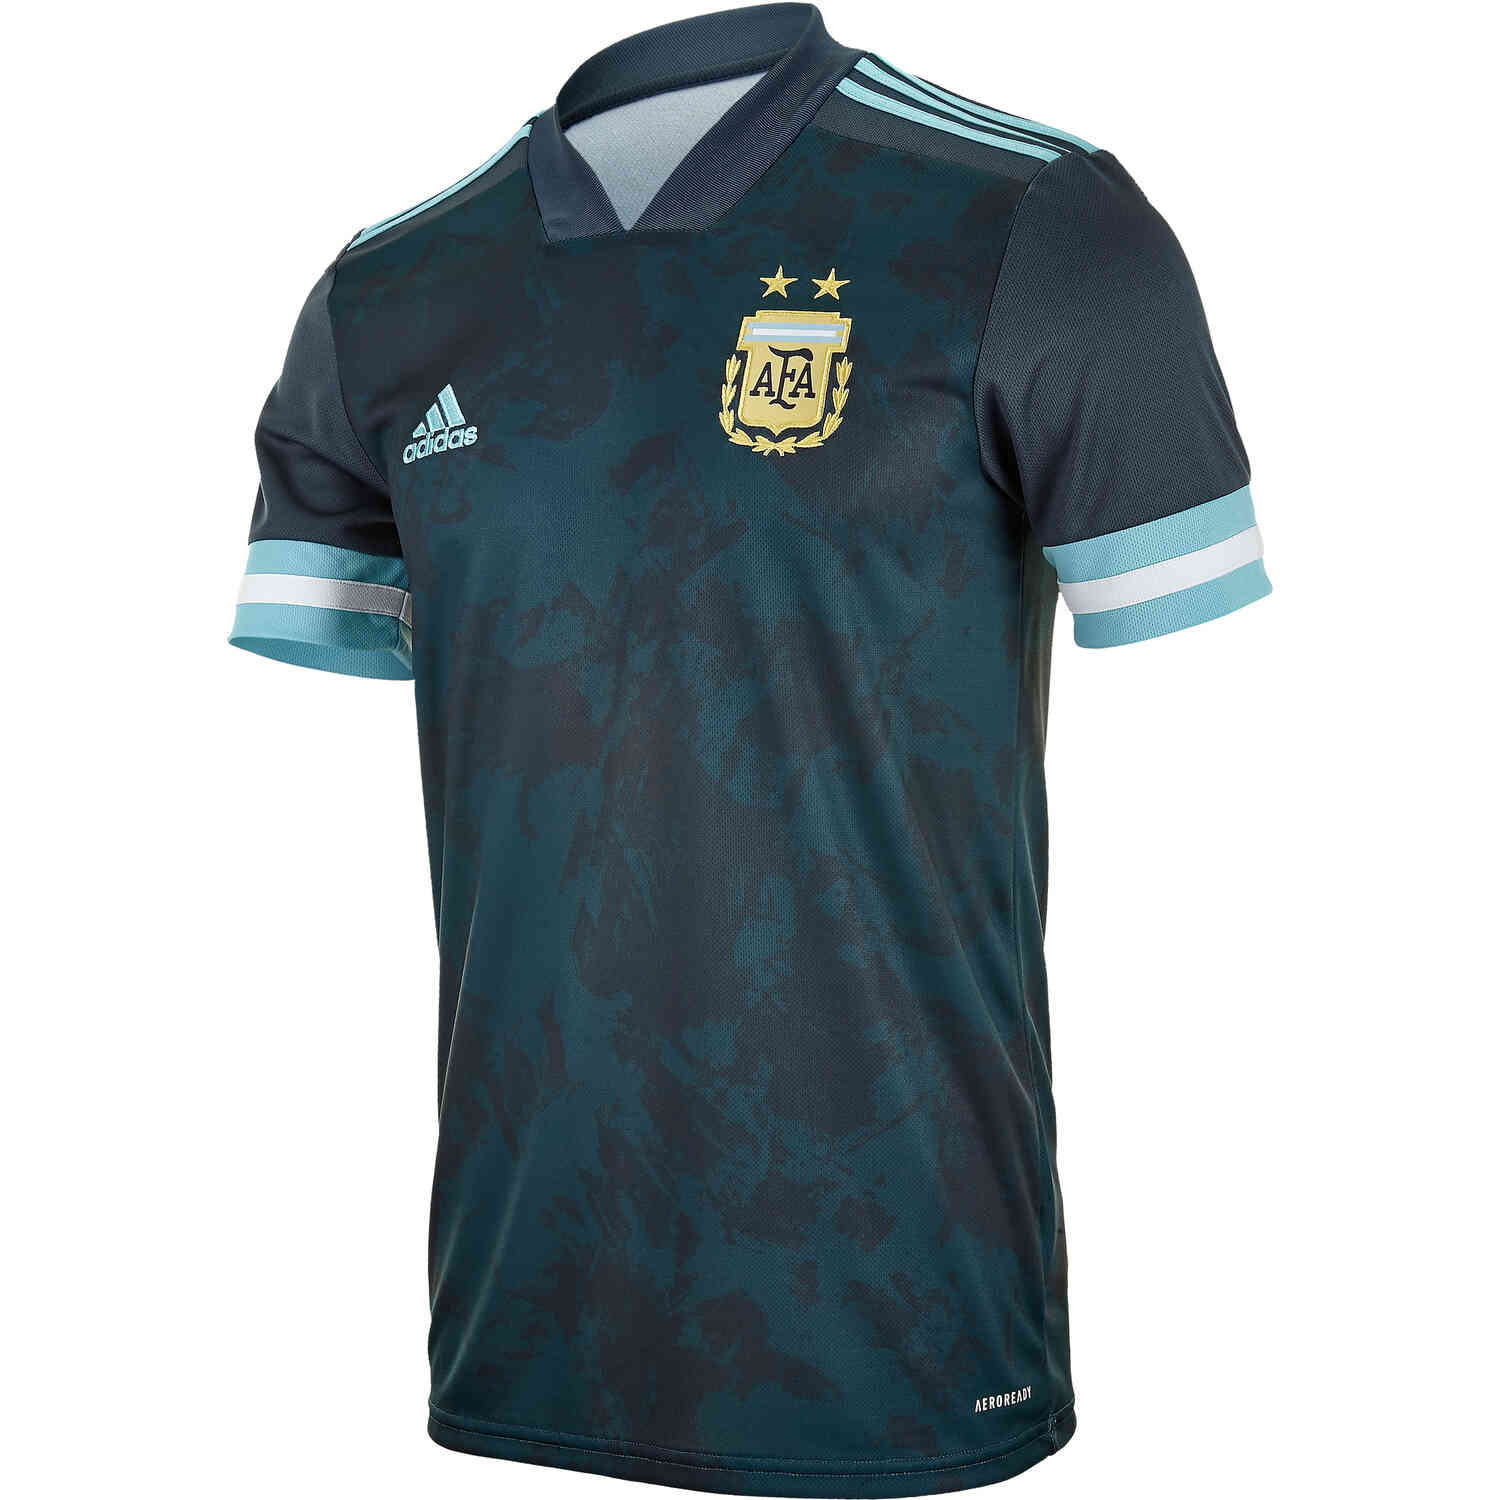 messi away argentina jersey